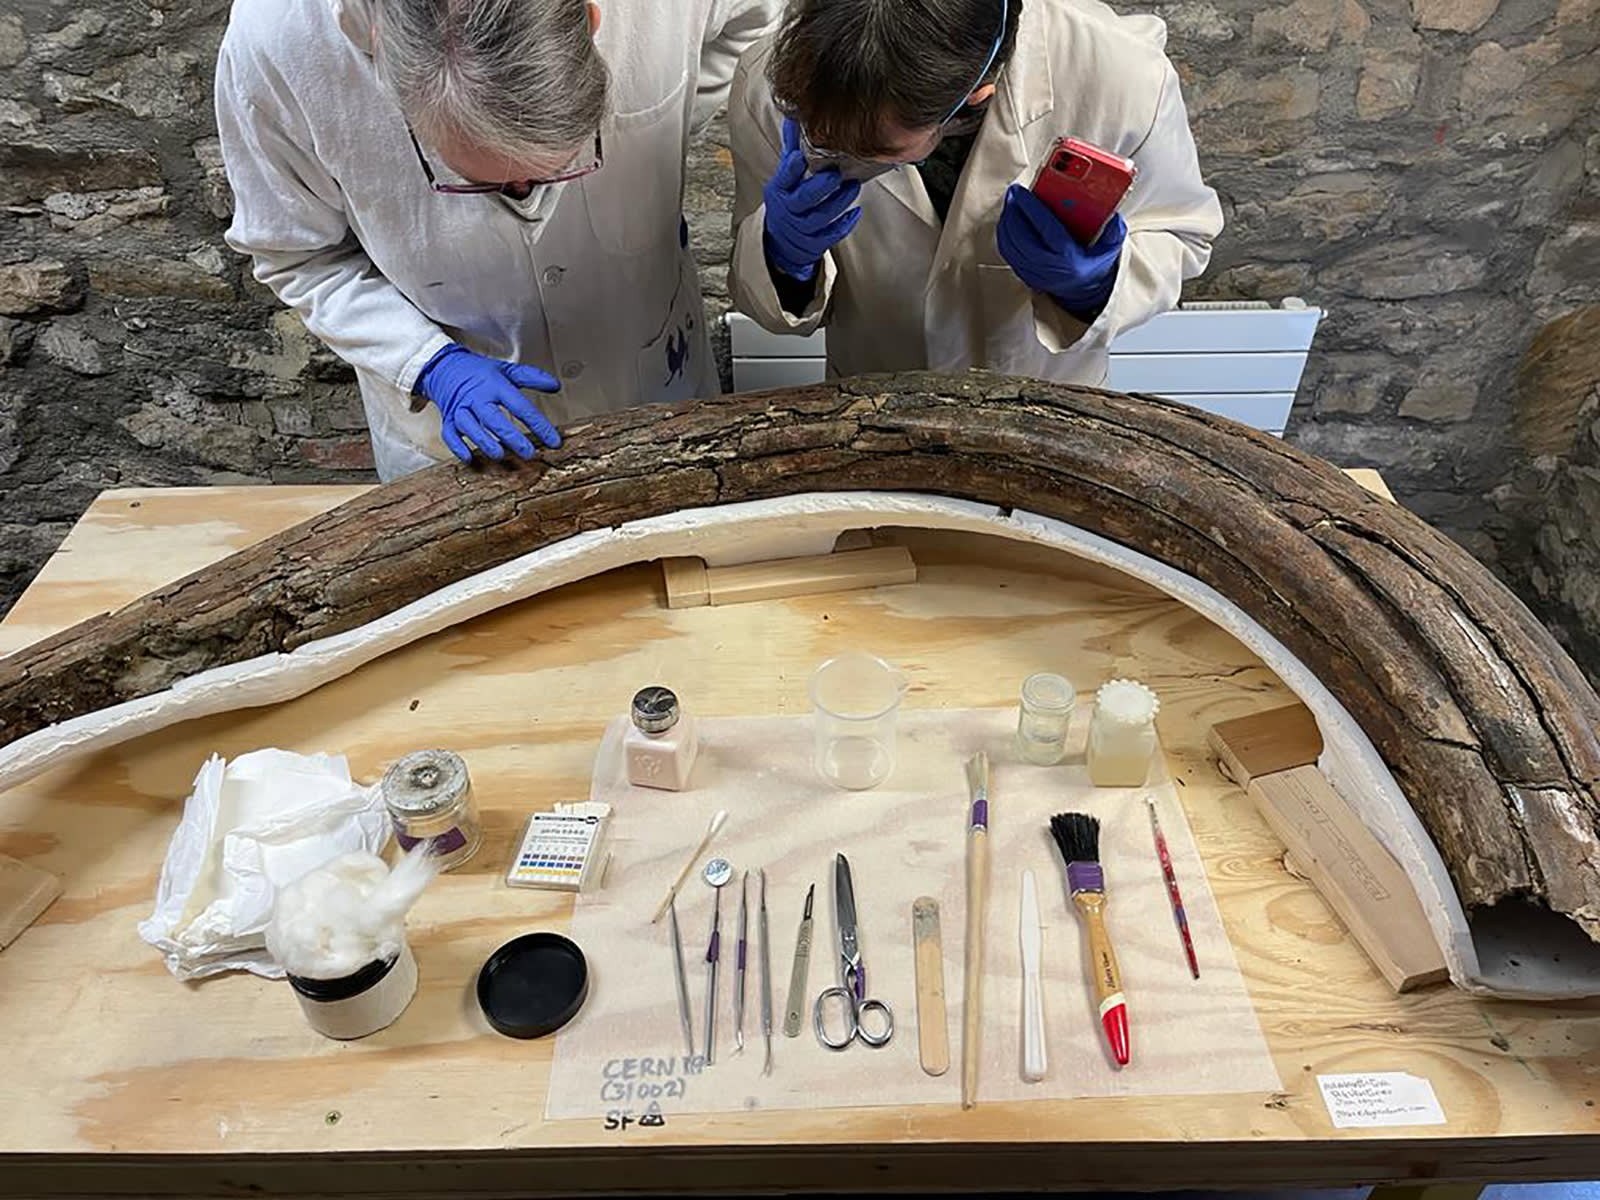 اكتشاف لعظام الماموث وأدوات إنسان نياندرتال يكشف عن الحياة في العصر الجليدي